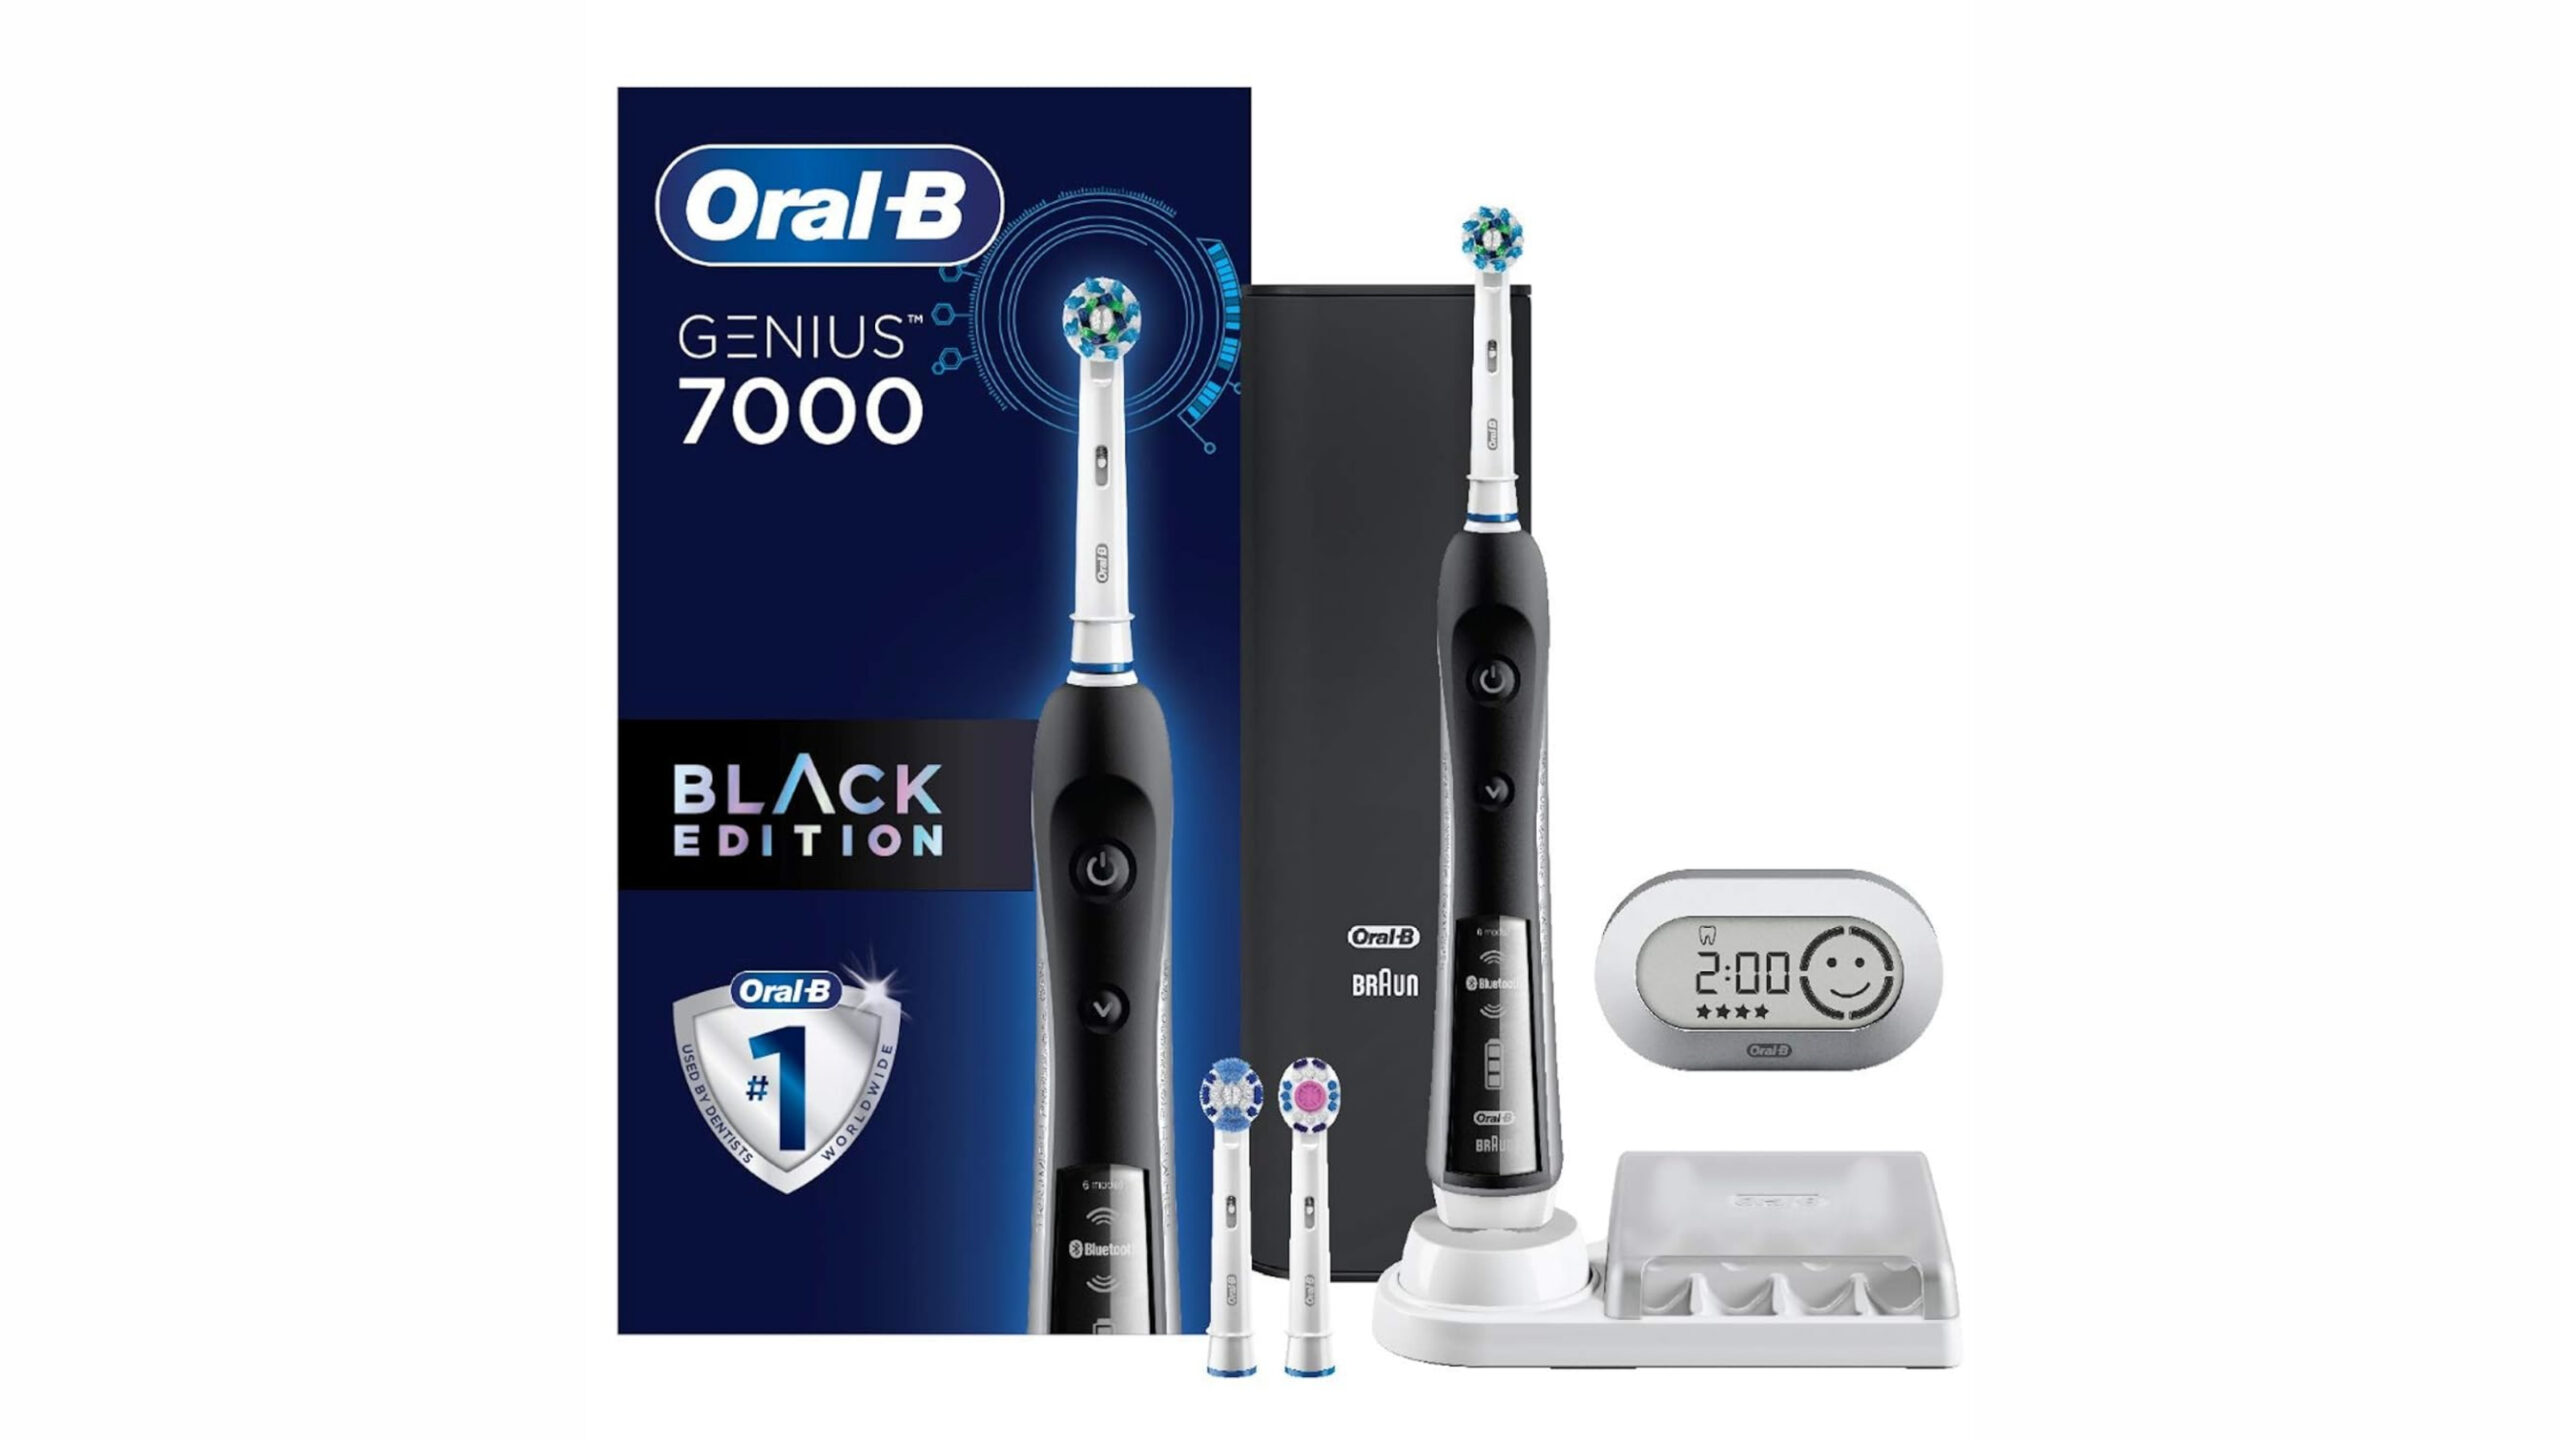 packaging of oral b genius 7000 electric toothbrush